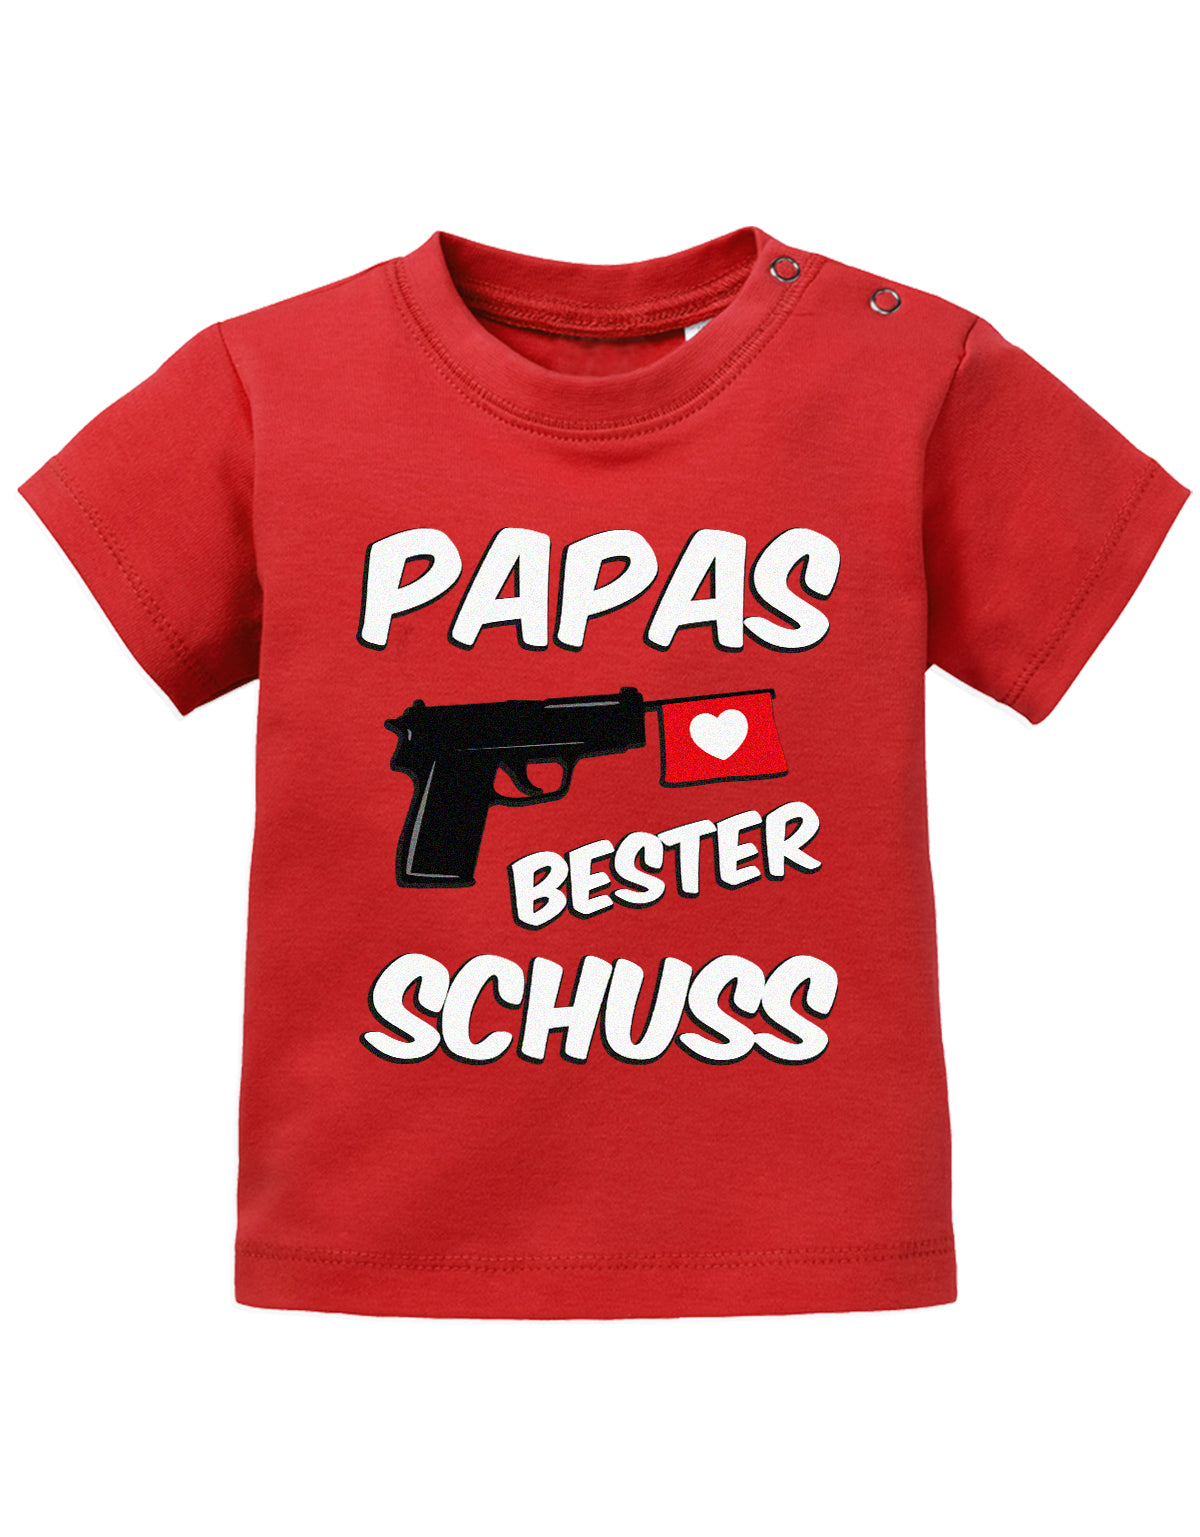 Lustiges süßes Sprüche Baby Shirt Papas bester Schuss Rot